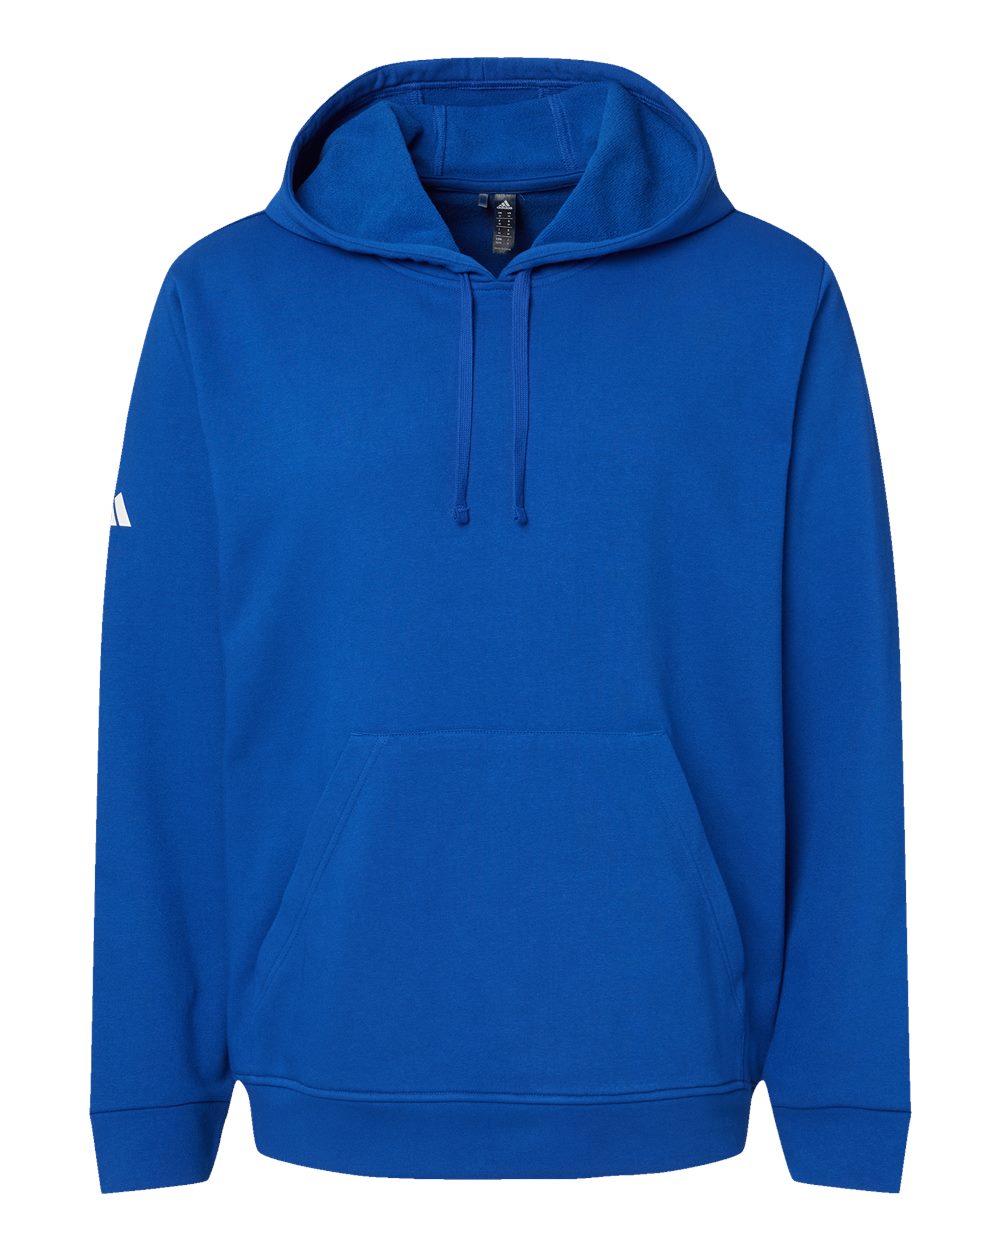 Adidas Fleece Hooded Sweatshirt